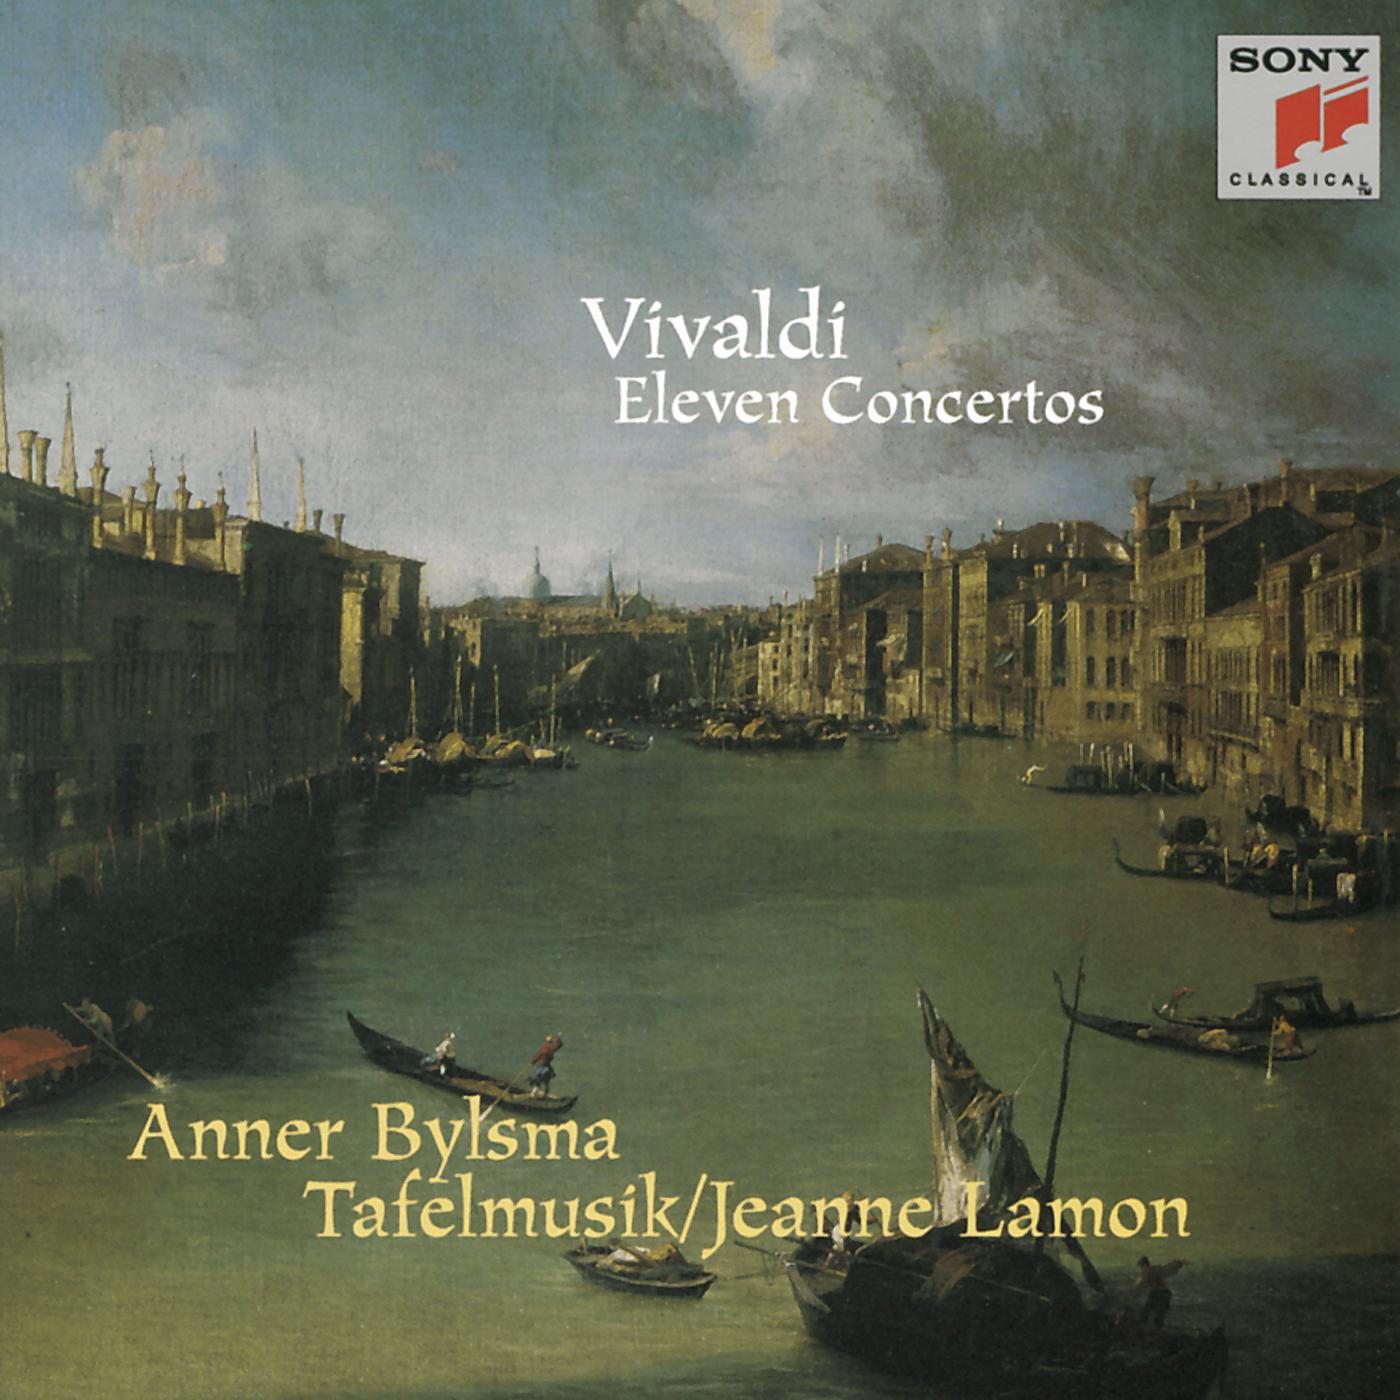 Concerto for 2 Violins & 2 Cellos in D Major, RV 564